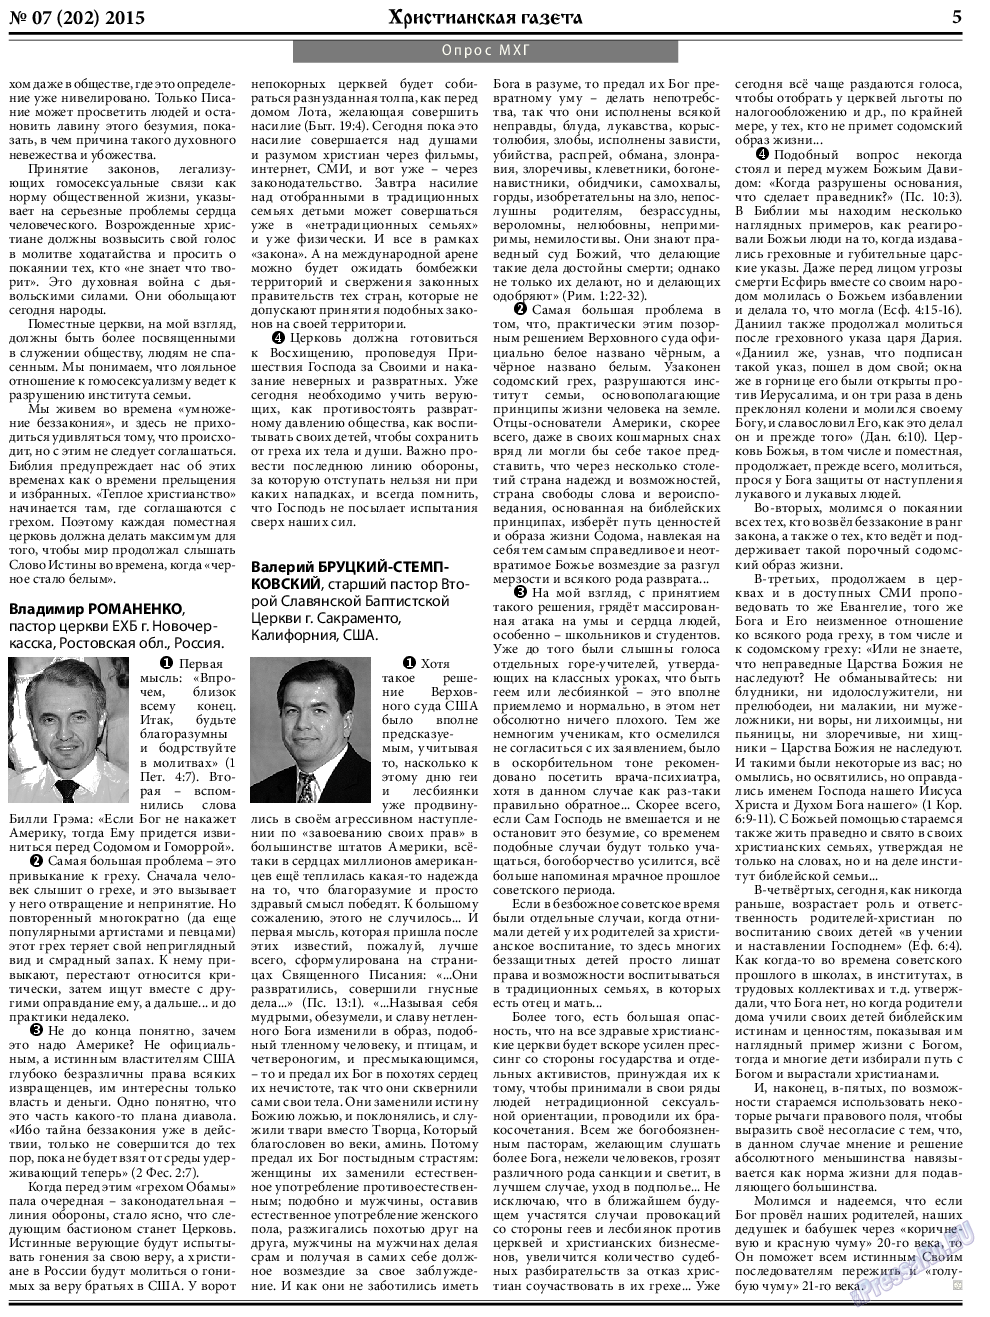 Христианская газета, газета. 2015 №7 стр.5